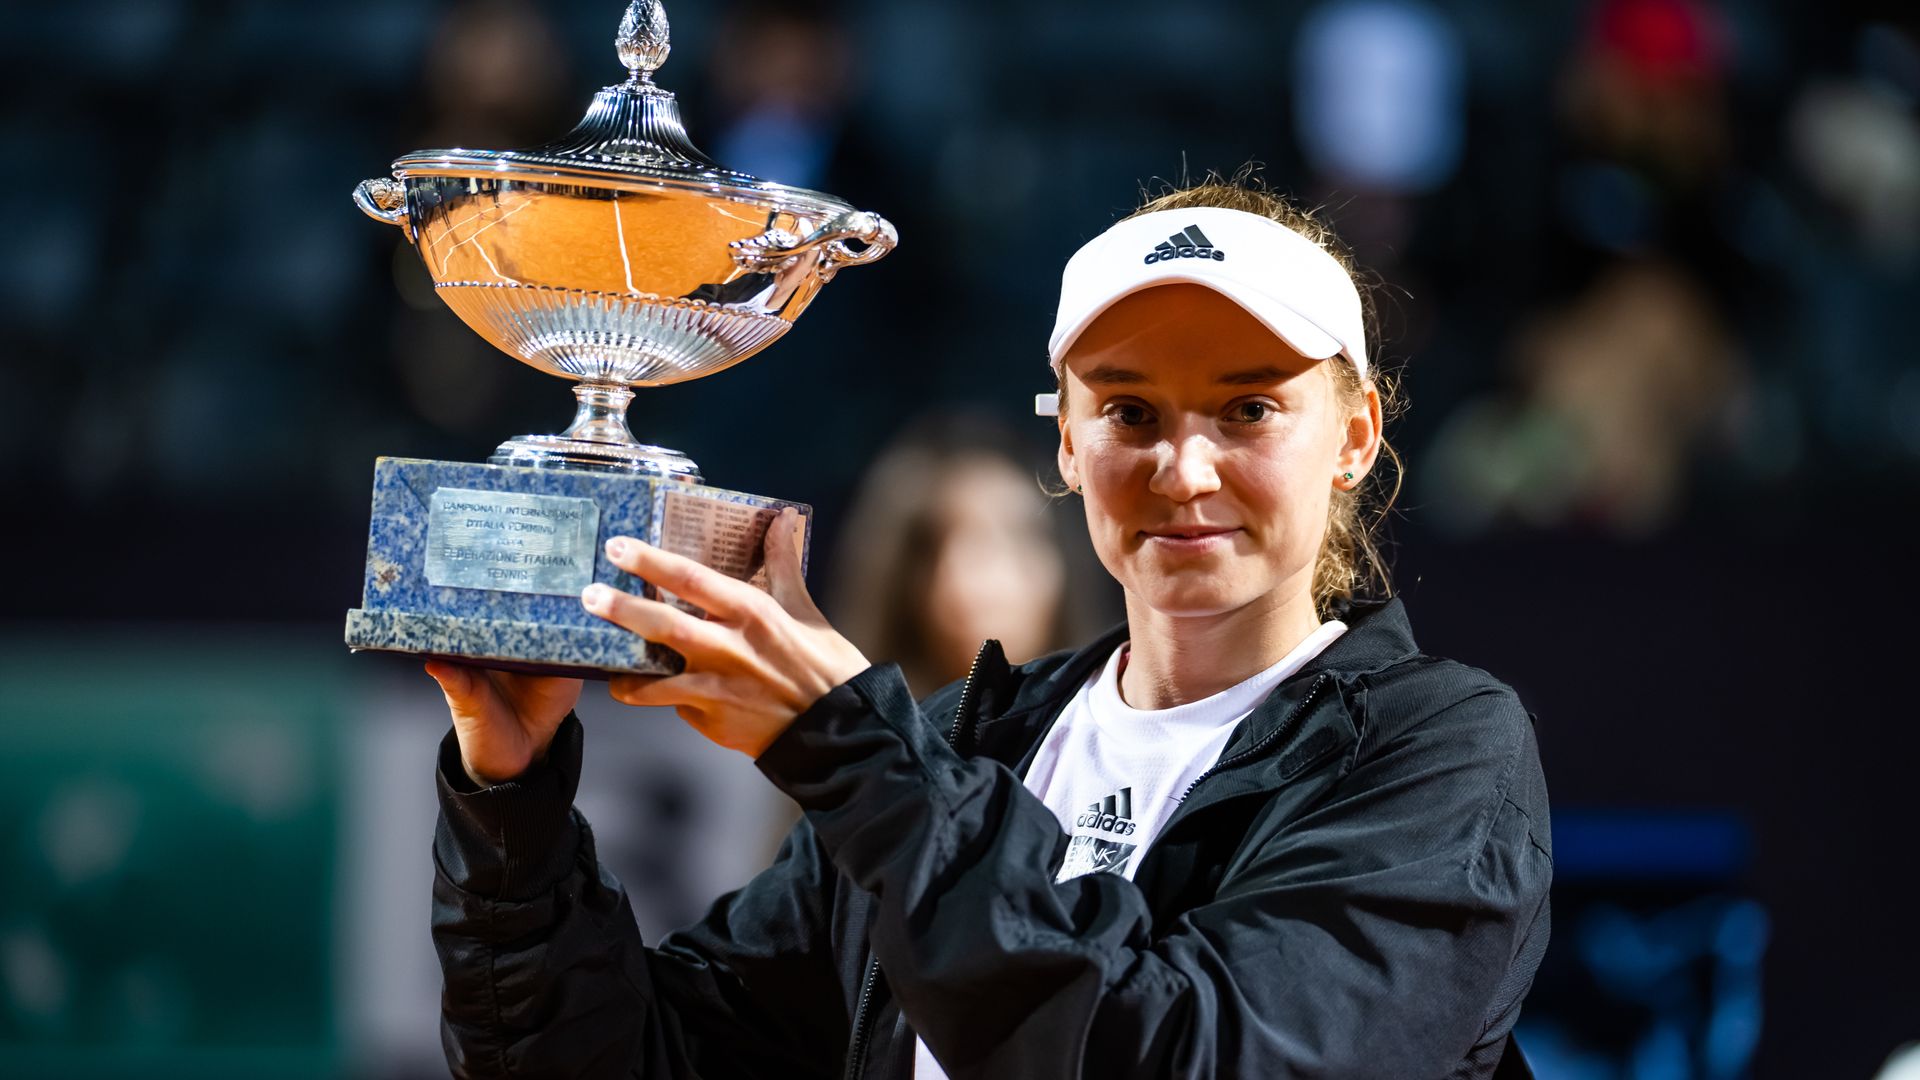 Elena Rybakina: Juara Wimbledon memenangkan Italia Terbuka setelah Anhelina Kalininia pensiun |  Berita Tenis